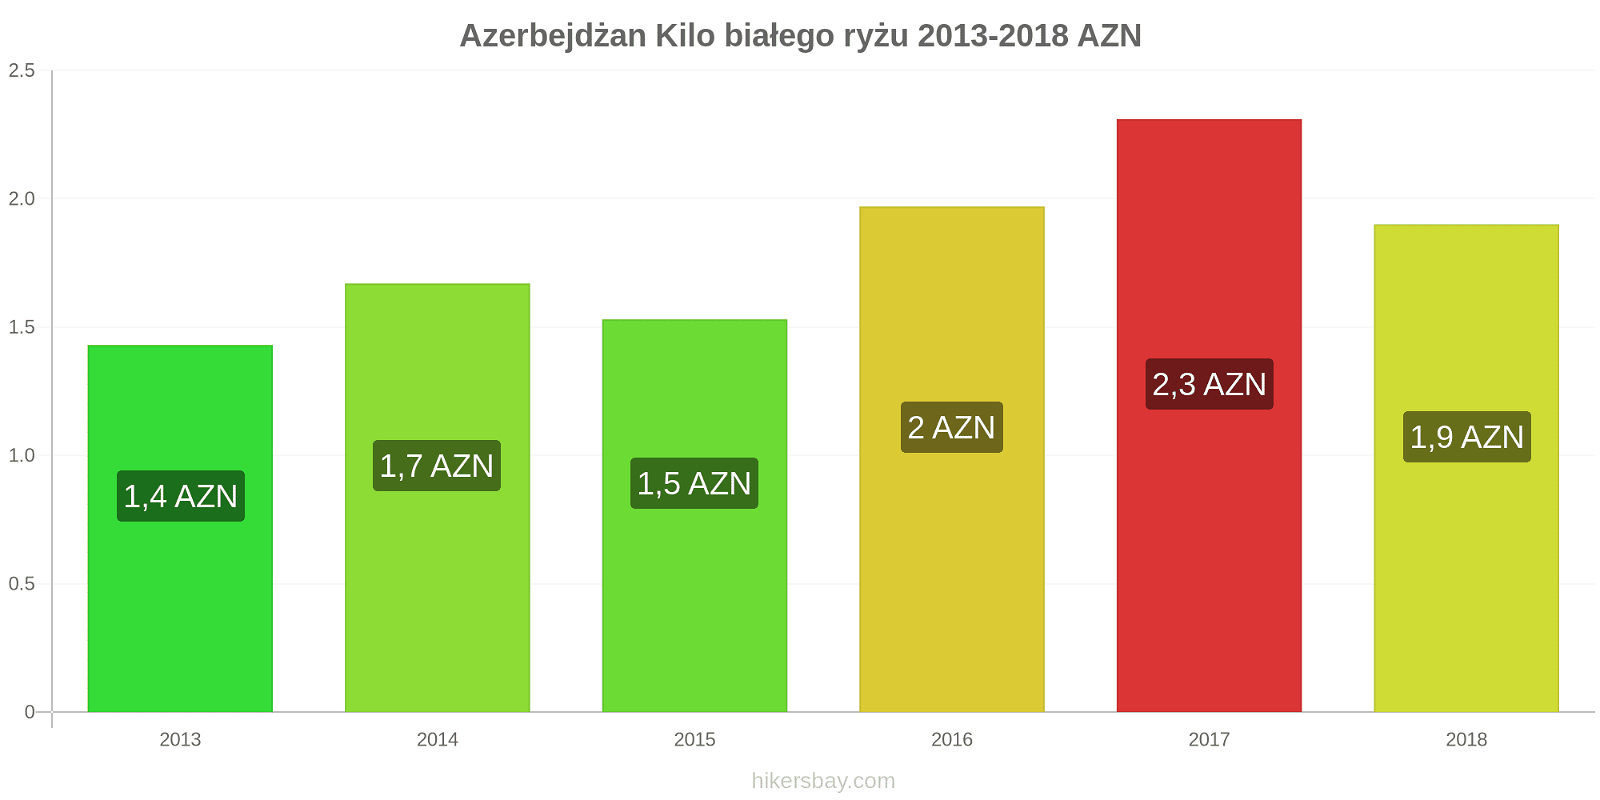 Azerbejdżan zmiany cen Kilo białego ryżu hikersbay.com